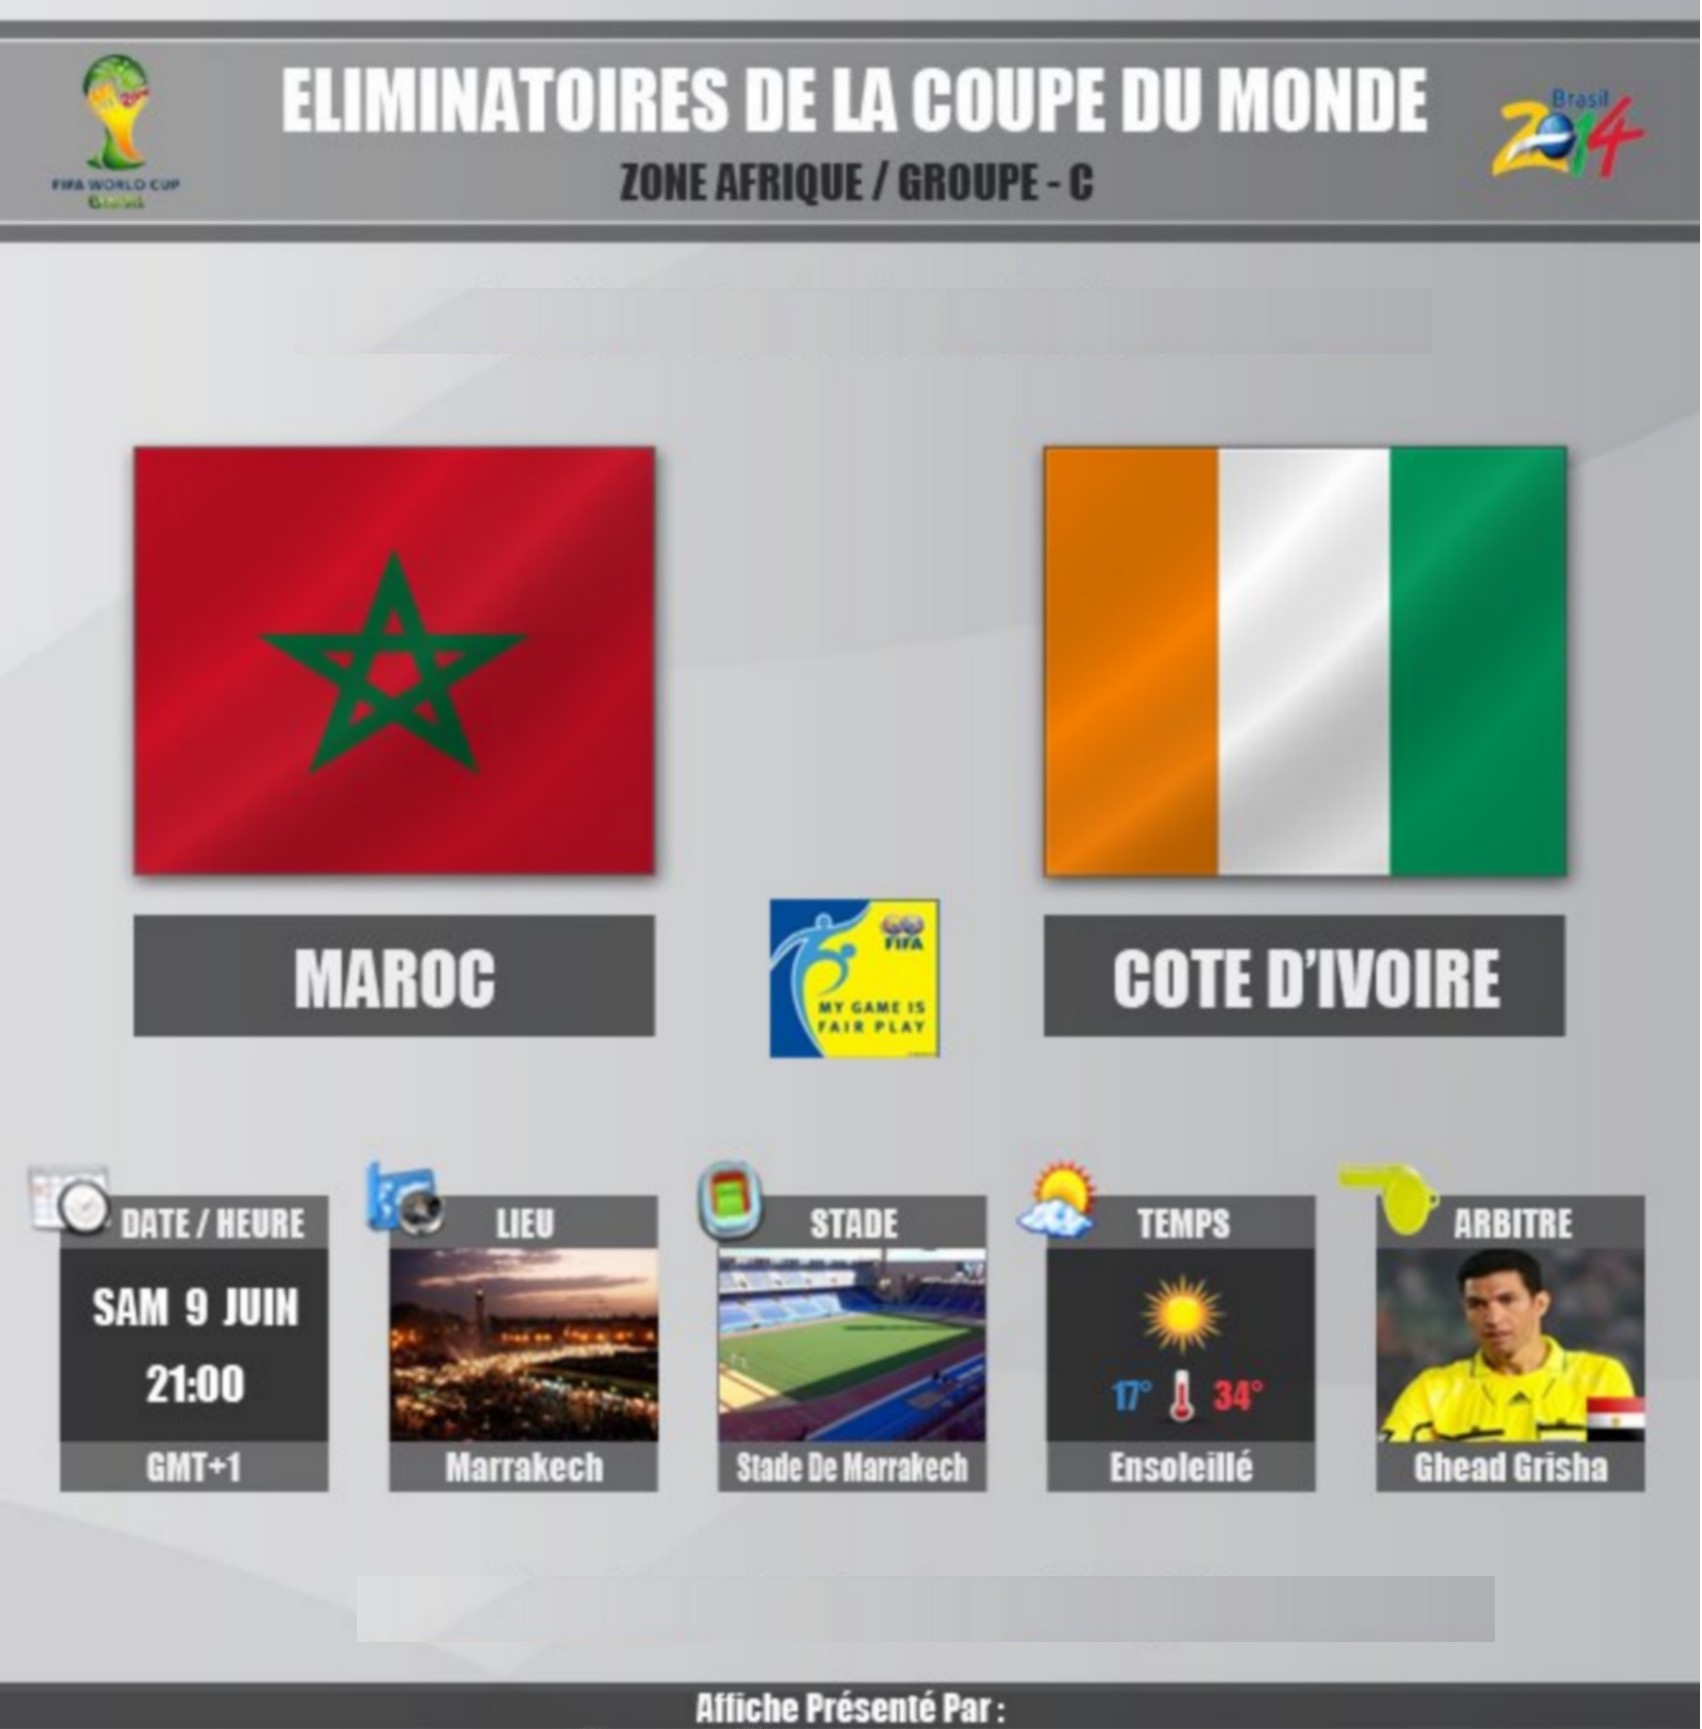 توقيت مباراة المغرب وساحل العاج اليوم الثلاثاء 29-10-2013 والقنوات الناقلة مباشرة لها